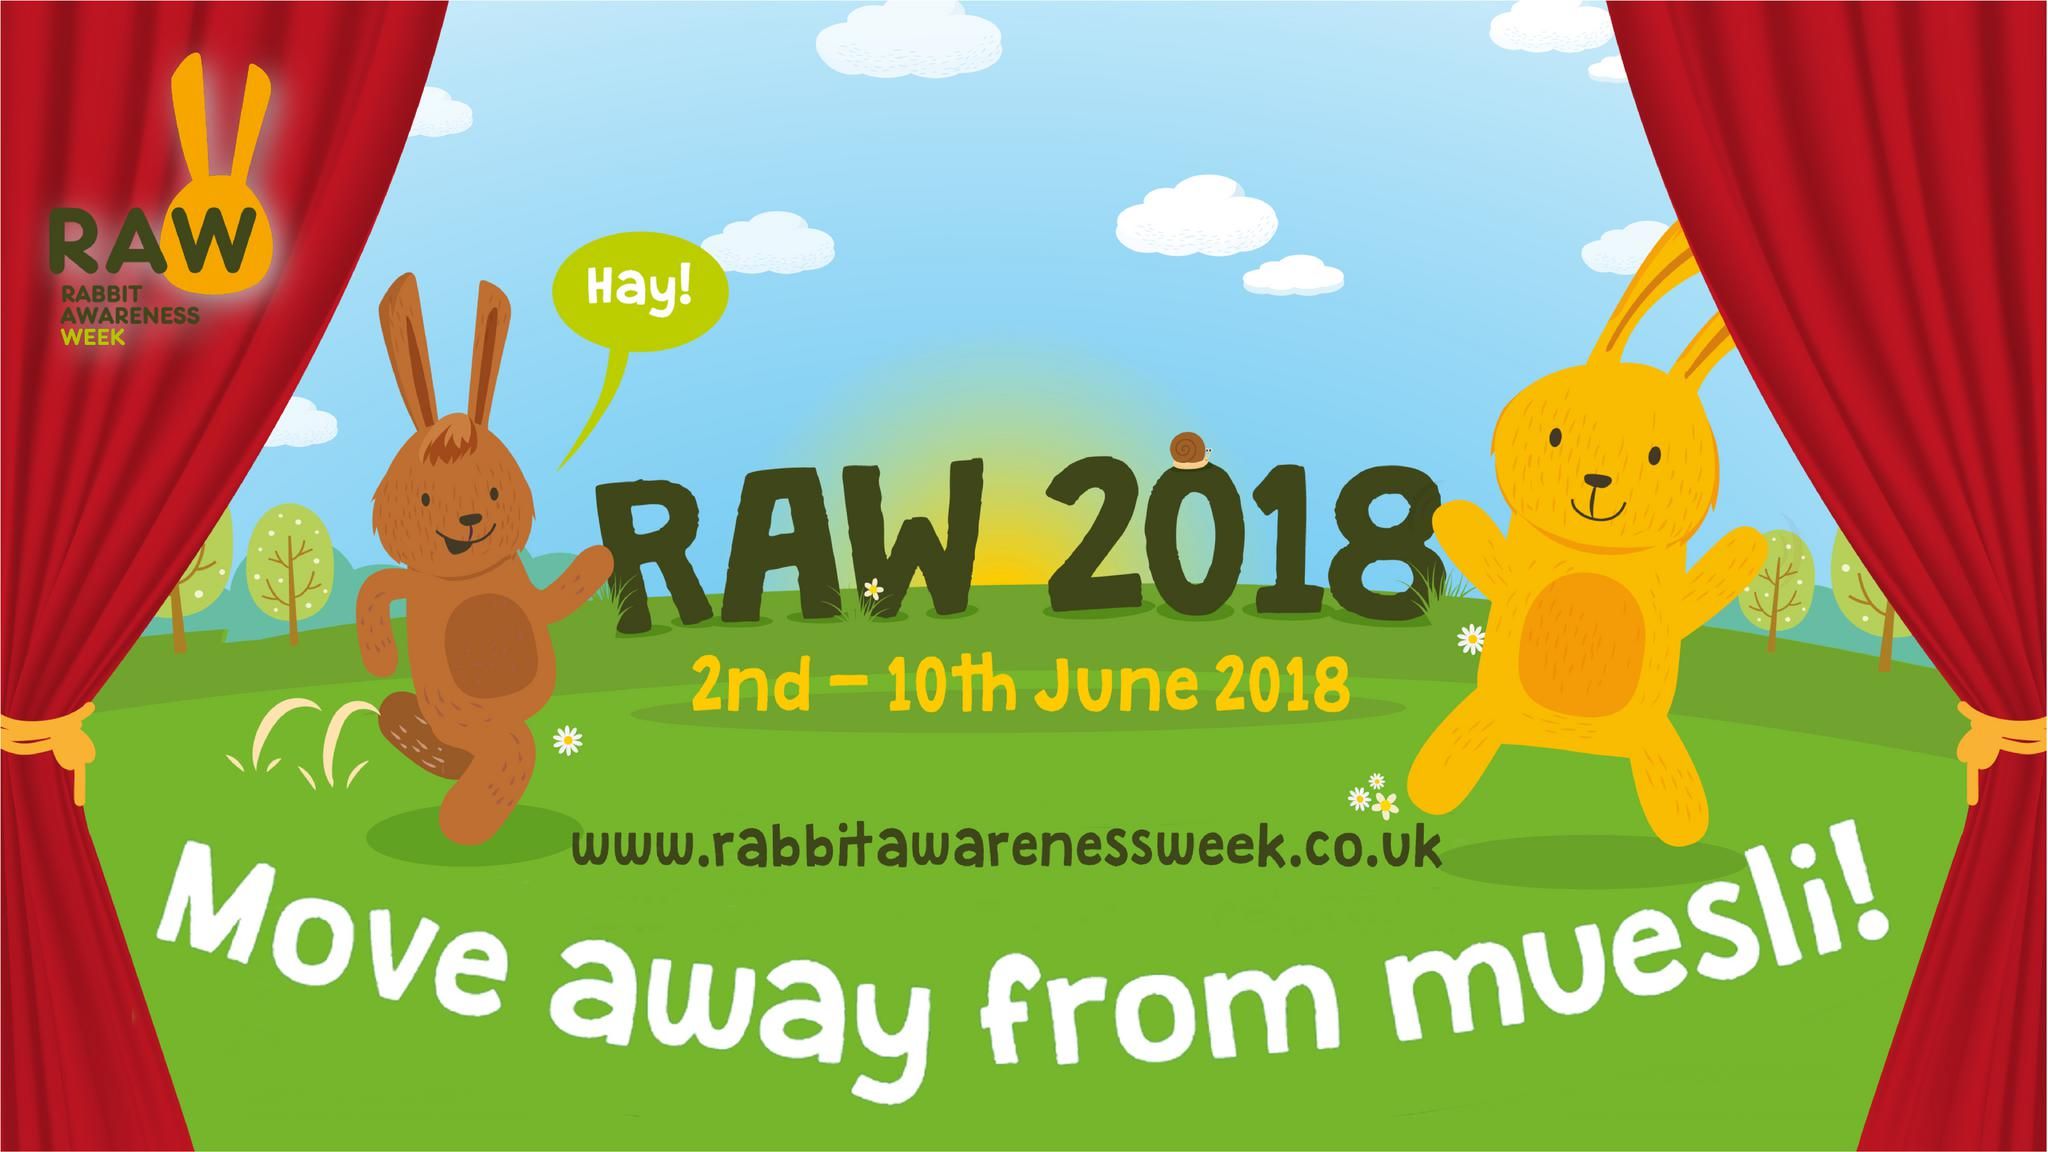 Rabbit Awareness Week 2018 2nd June to 10th June